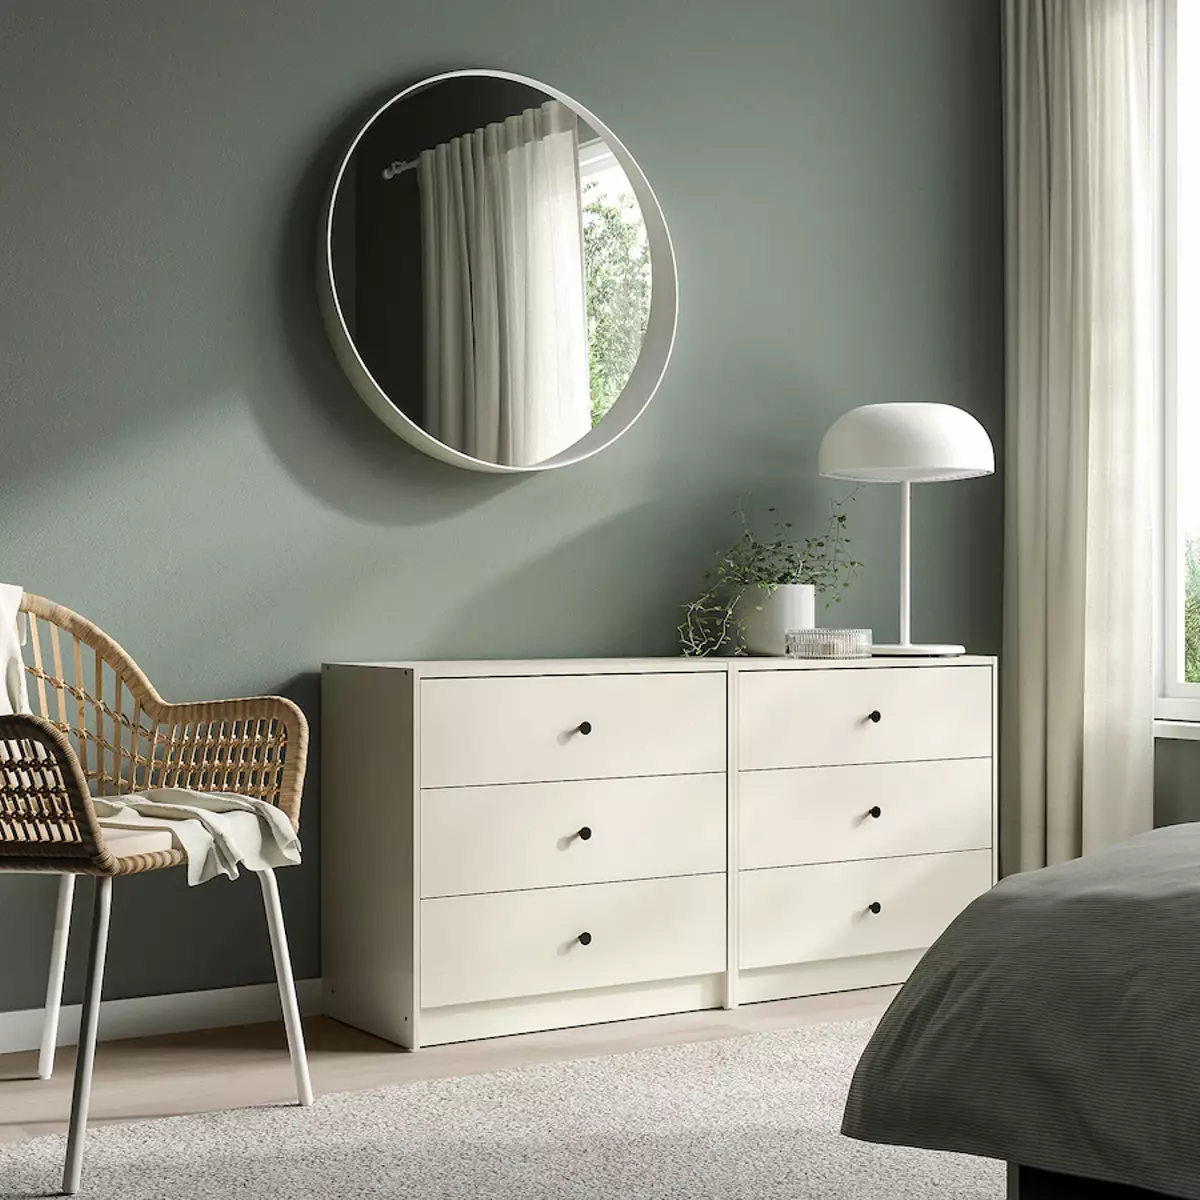 Cómodas Ikea | Puedes combinar uno o varios muebles dentro de la habitación